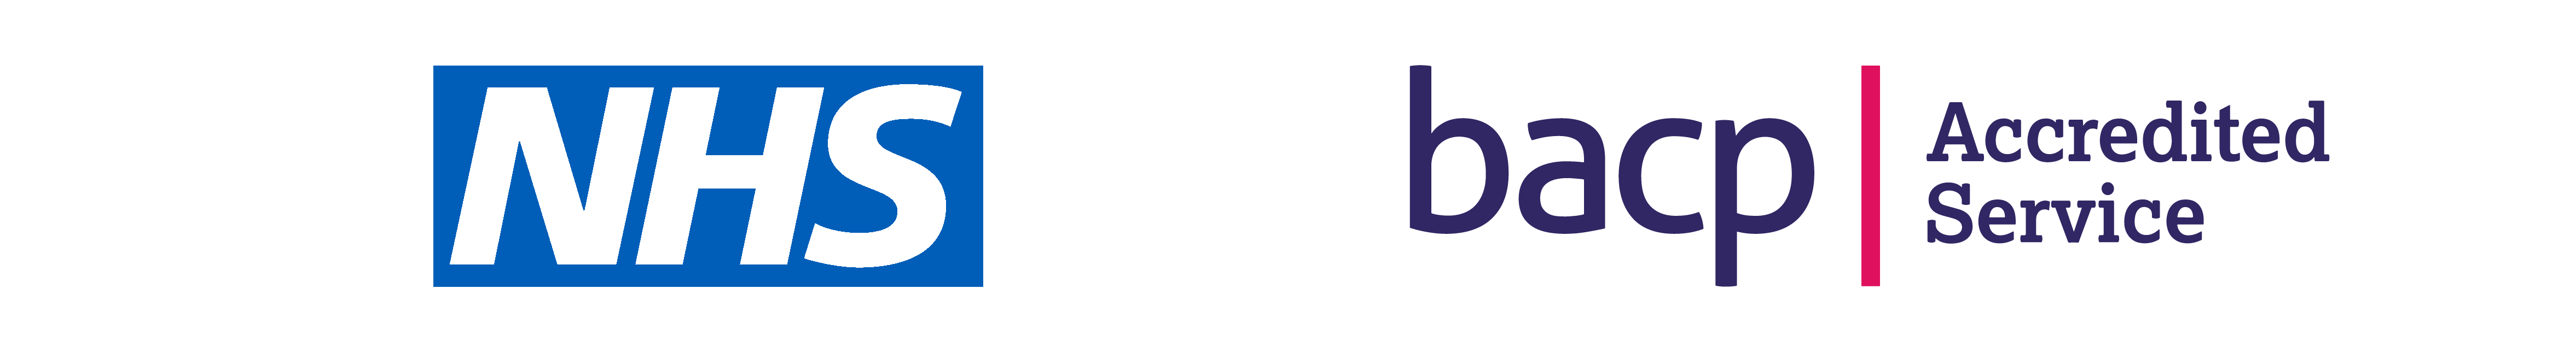 NHS and BACP Logos